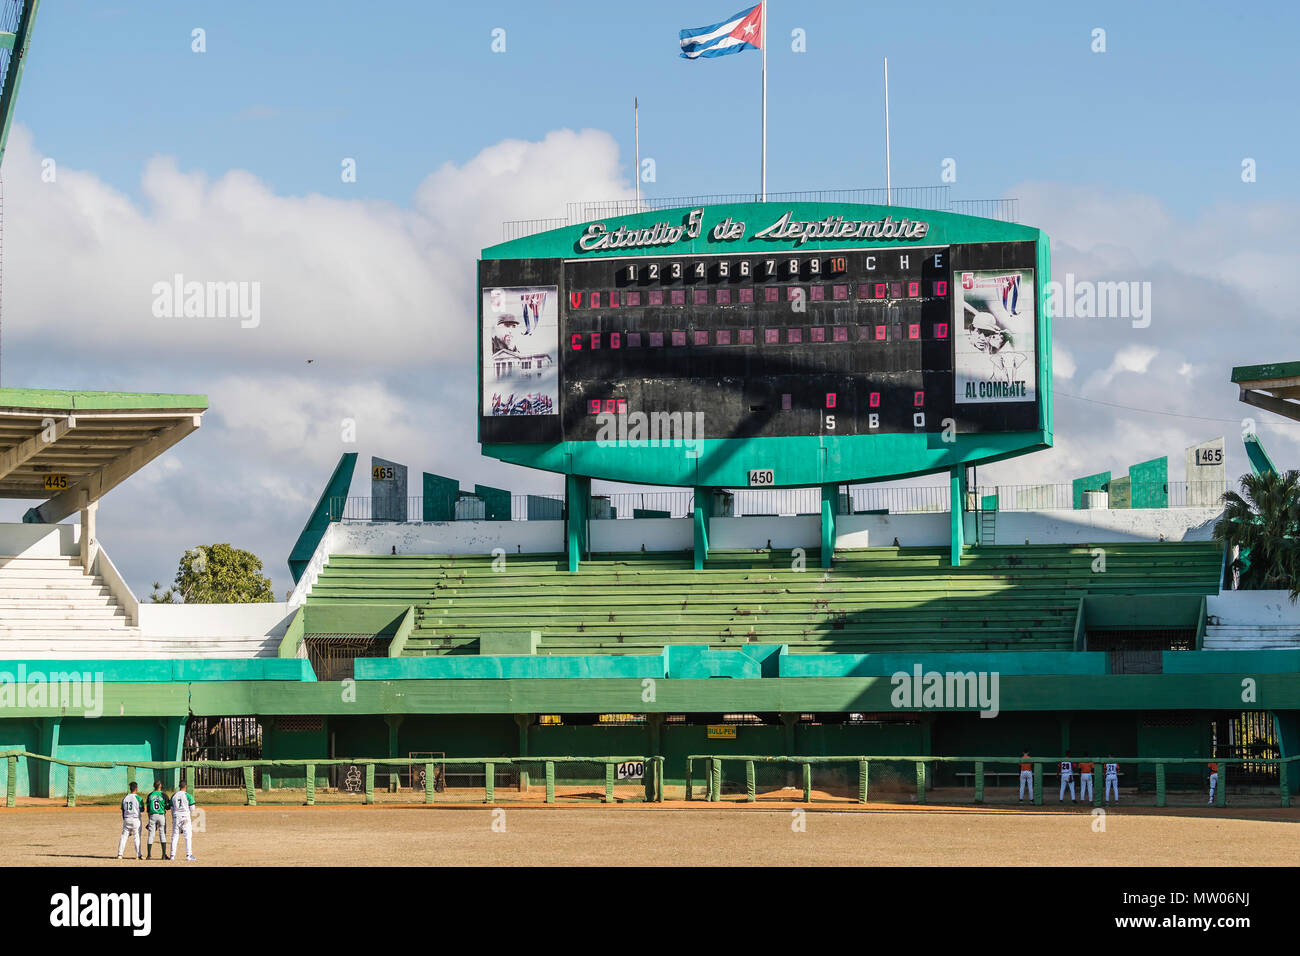 Il mondo accademico Provincial de Beisbol stadium scoreboard in Cienfuegos, Cuba. Foto Stock